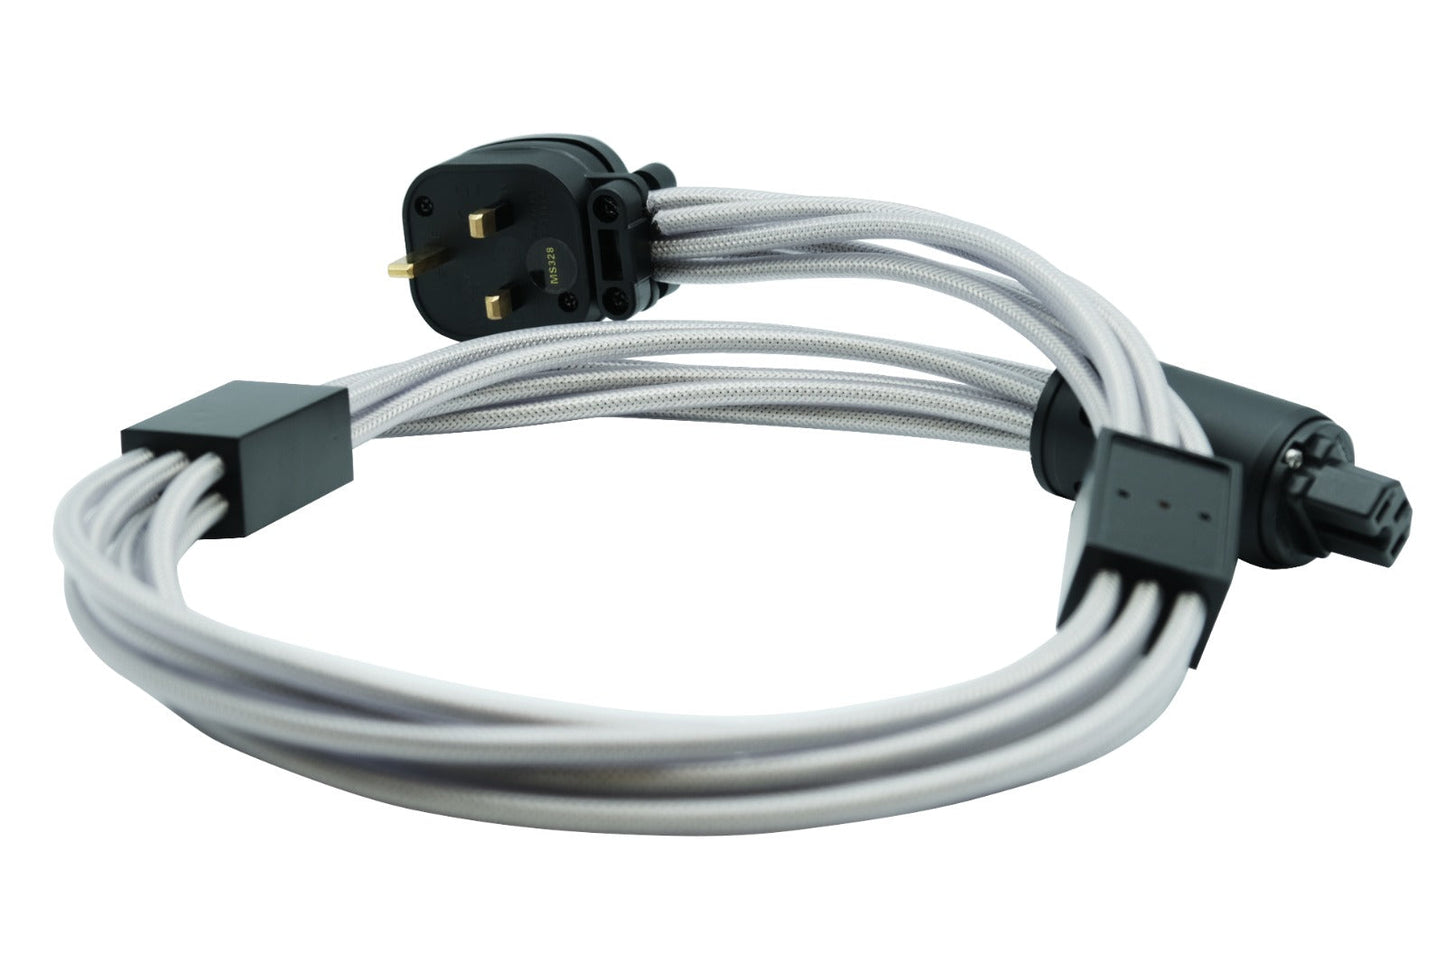 Titan Audio HS-X6 Mains Cable